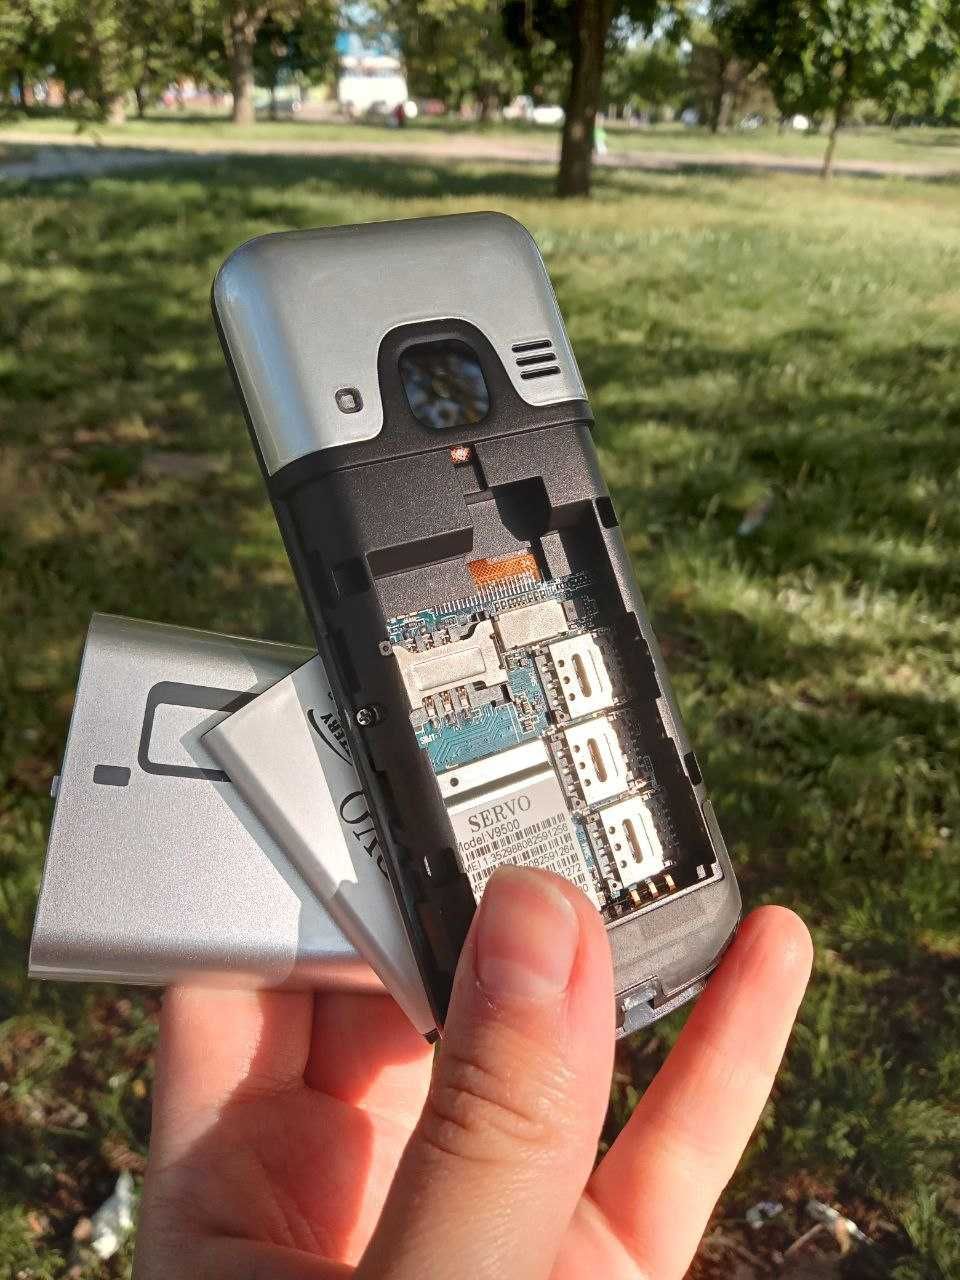 Мобильный телефон SERVO V9500 кнопочный на 4 SIM карты серебристый